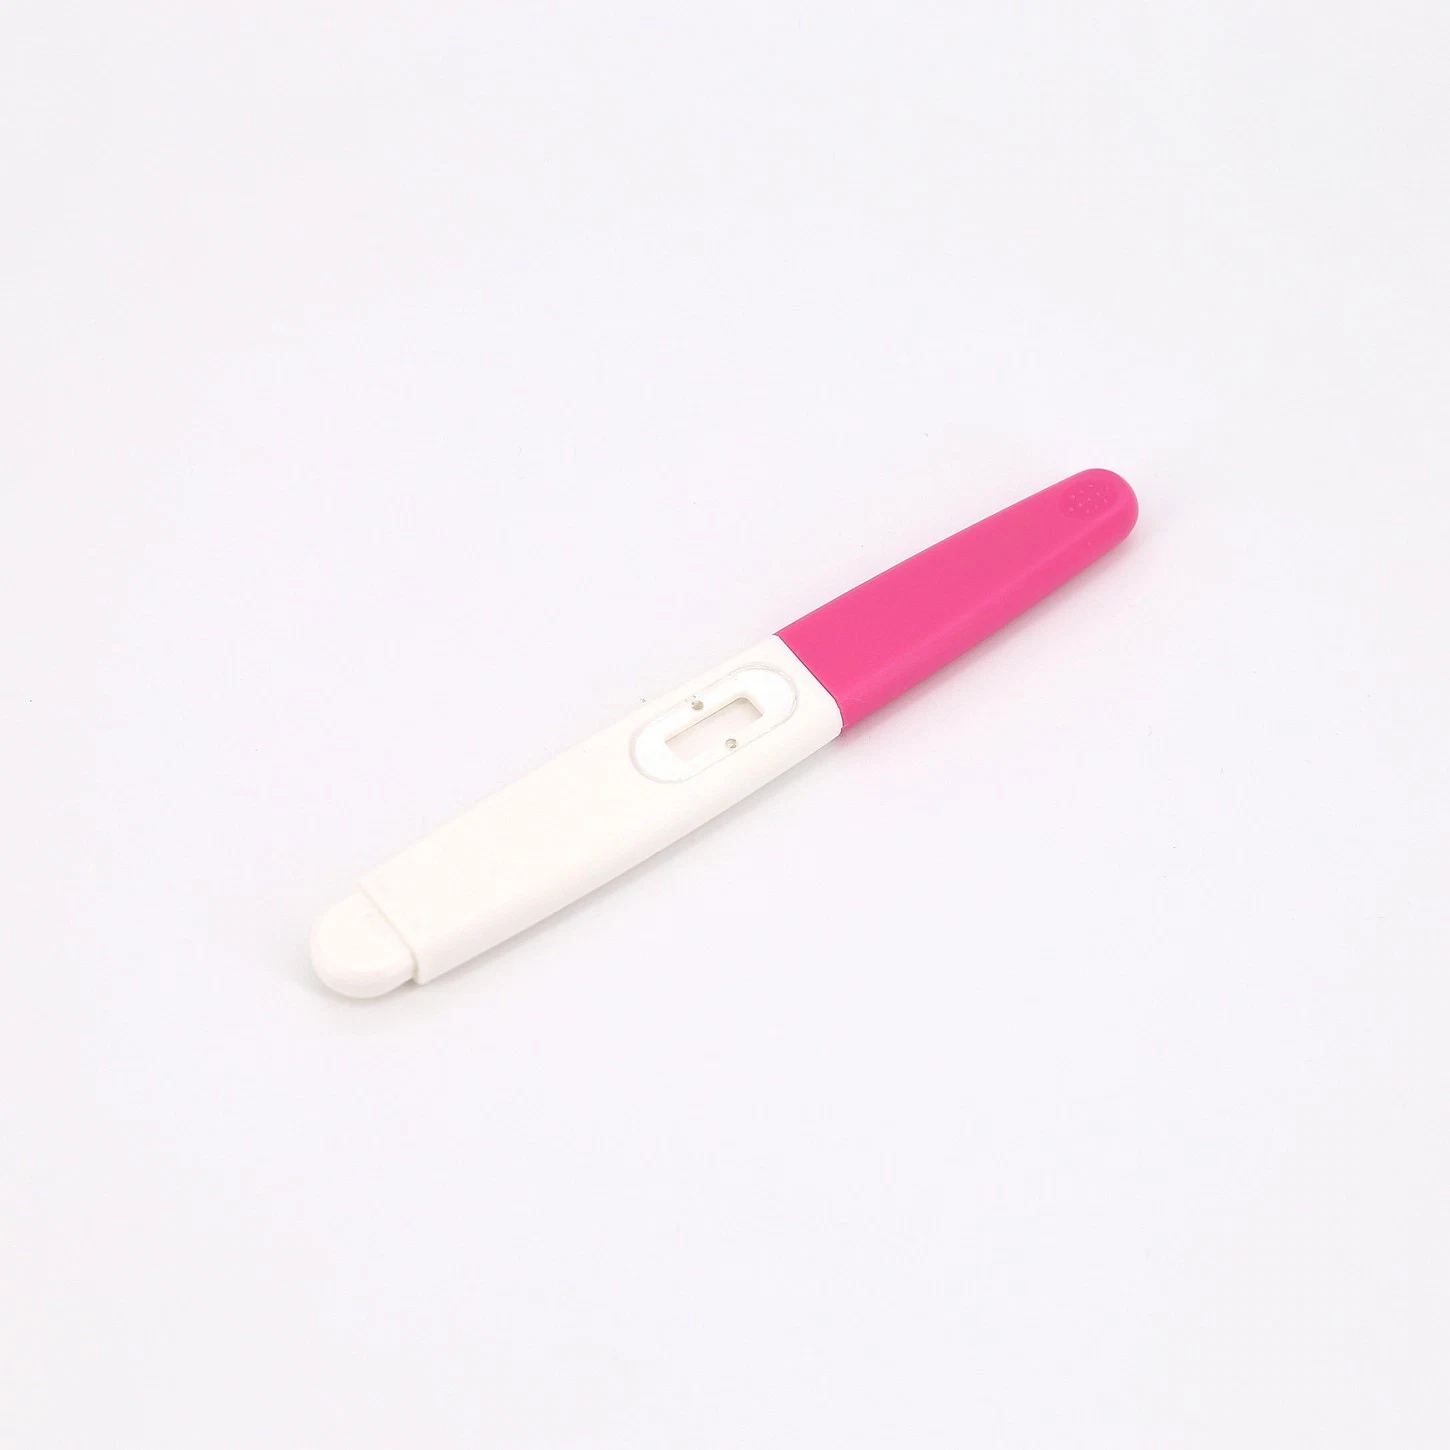 Einweg bequeme One Step Baby Check Urin HCG Schwangerschaft schnell Testen Sie den Stifttyp Midstream für den Heimgebrauch